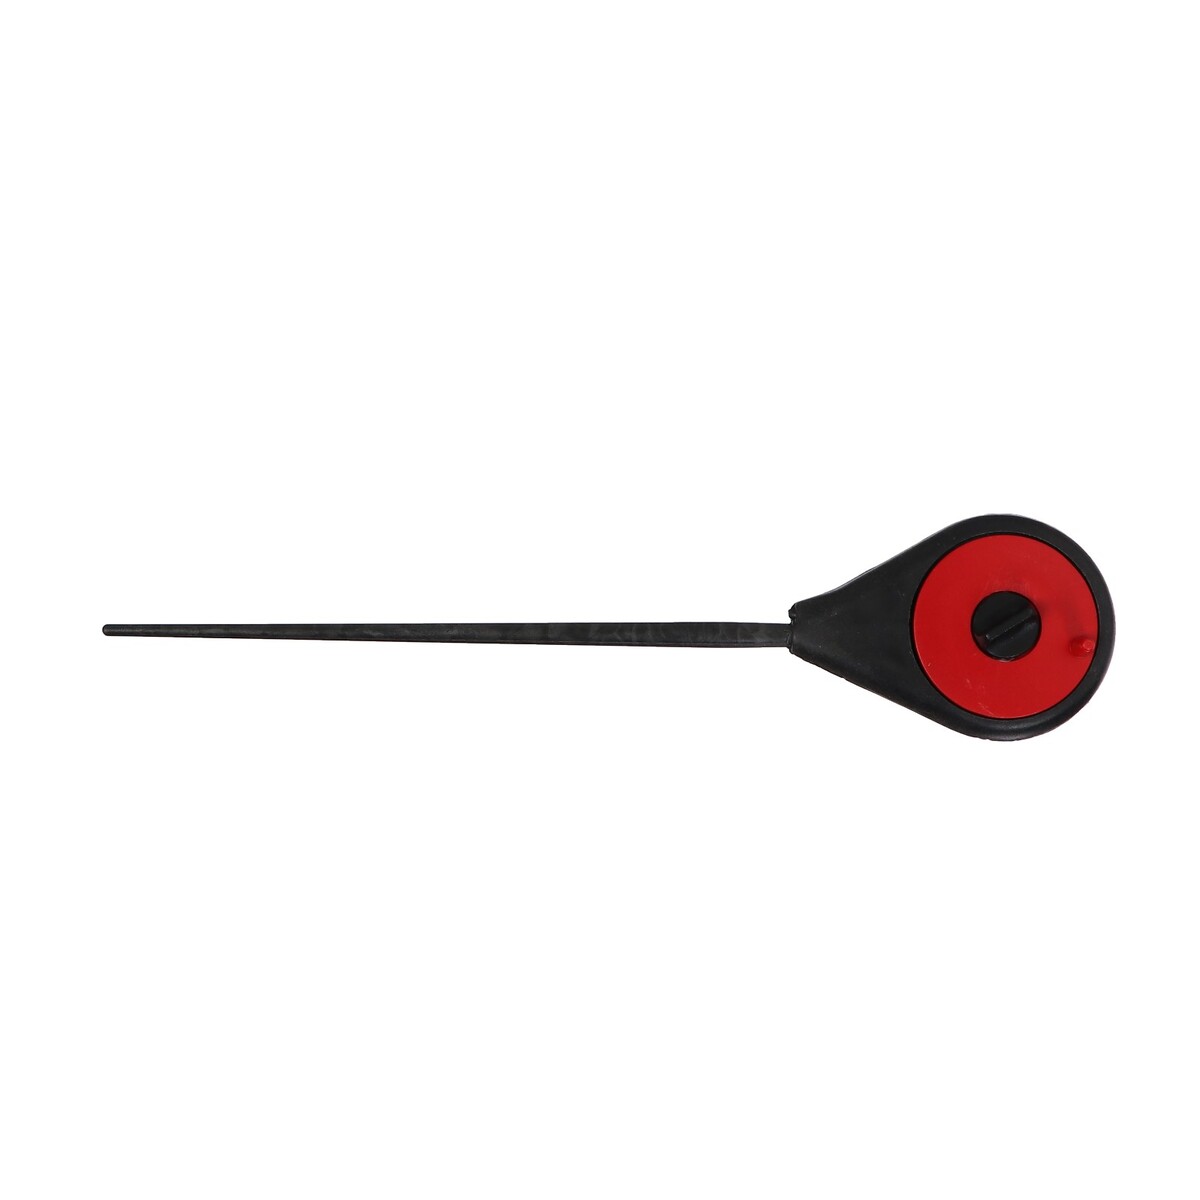 Удочка зимняя балалайка, цвет черный красный, hfb-18 удочка зимняя ручка неопрен катушка d 5 5 см длина 33 см оранжевый hfb 34